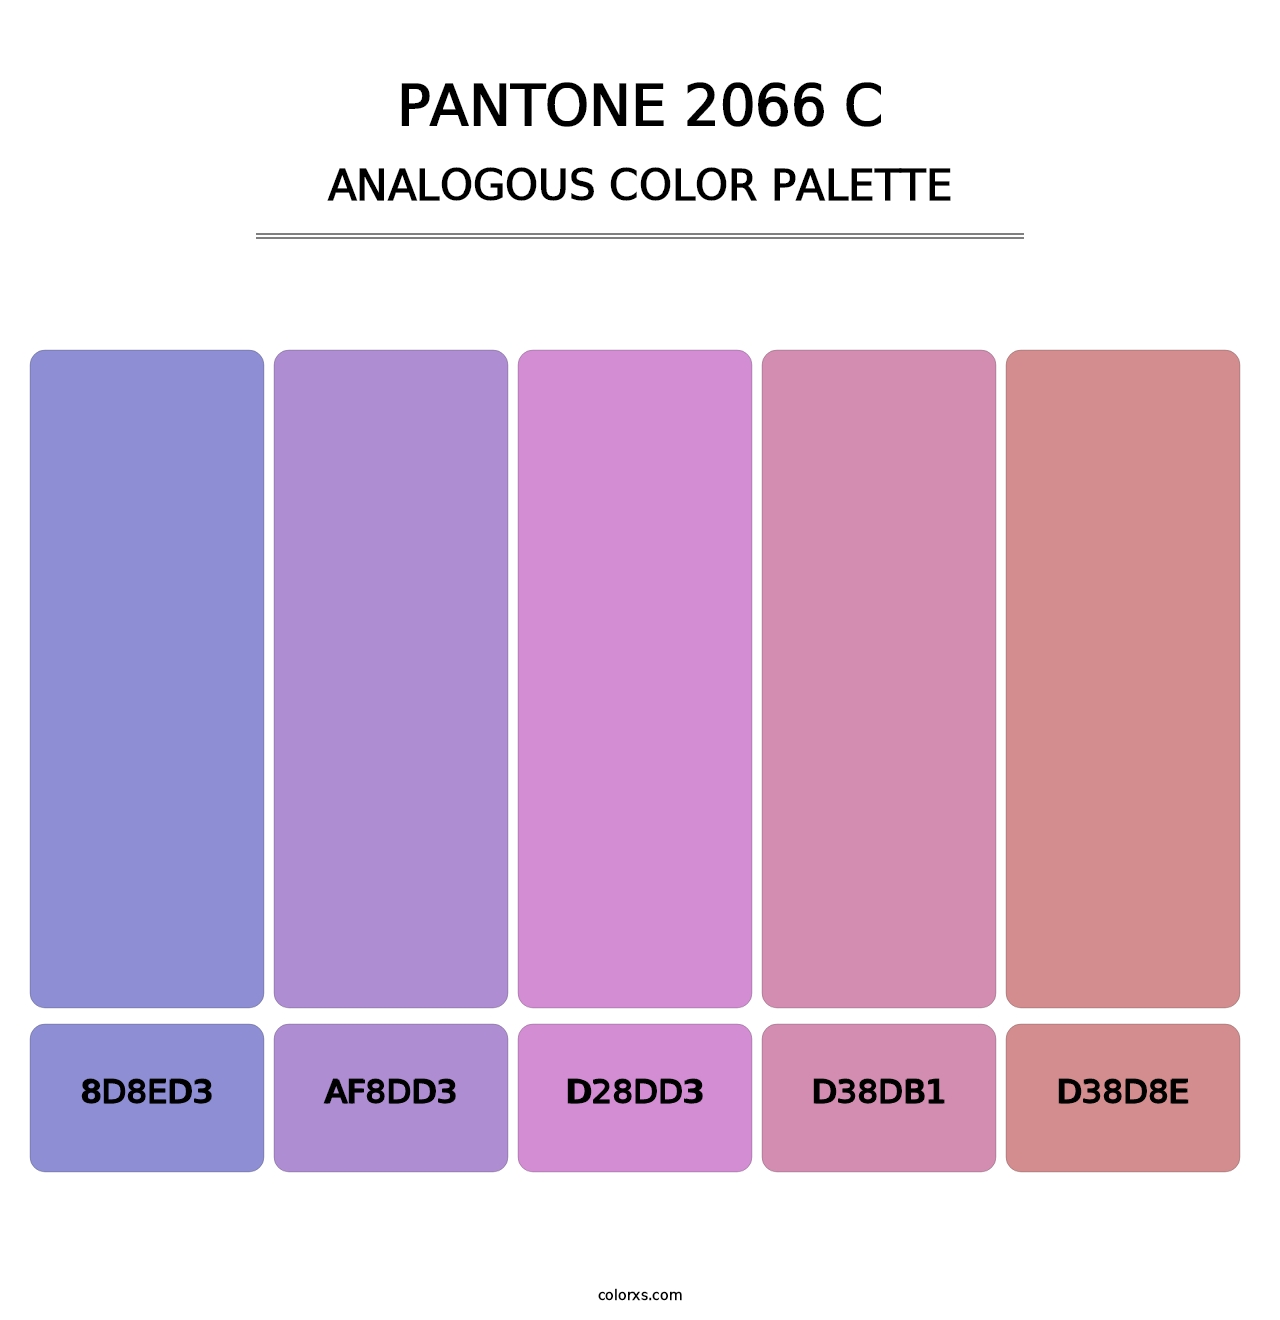 PANTONE 2066 C - Analogous Color Palette